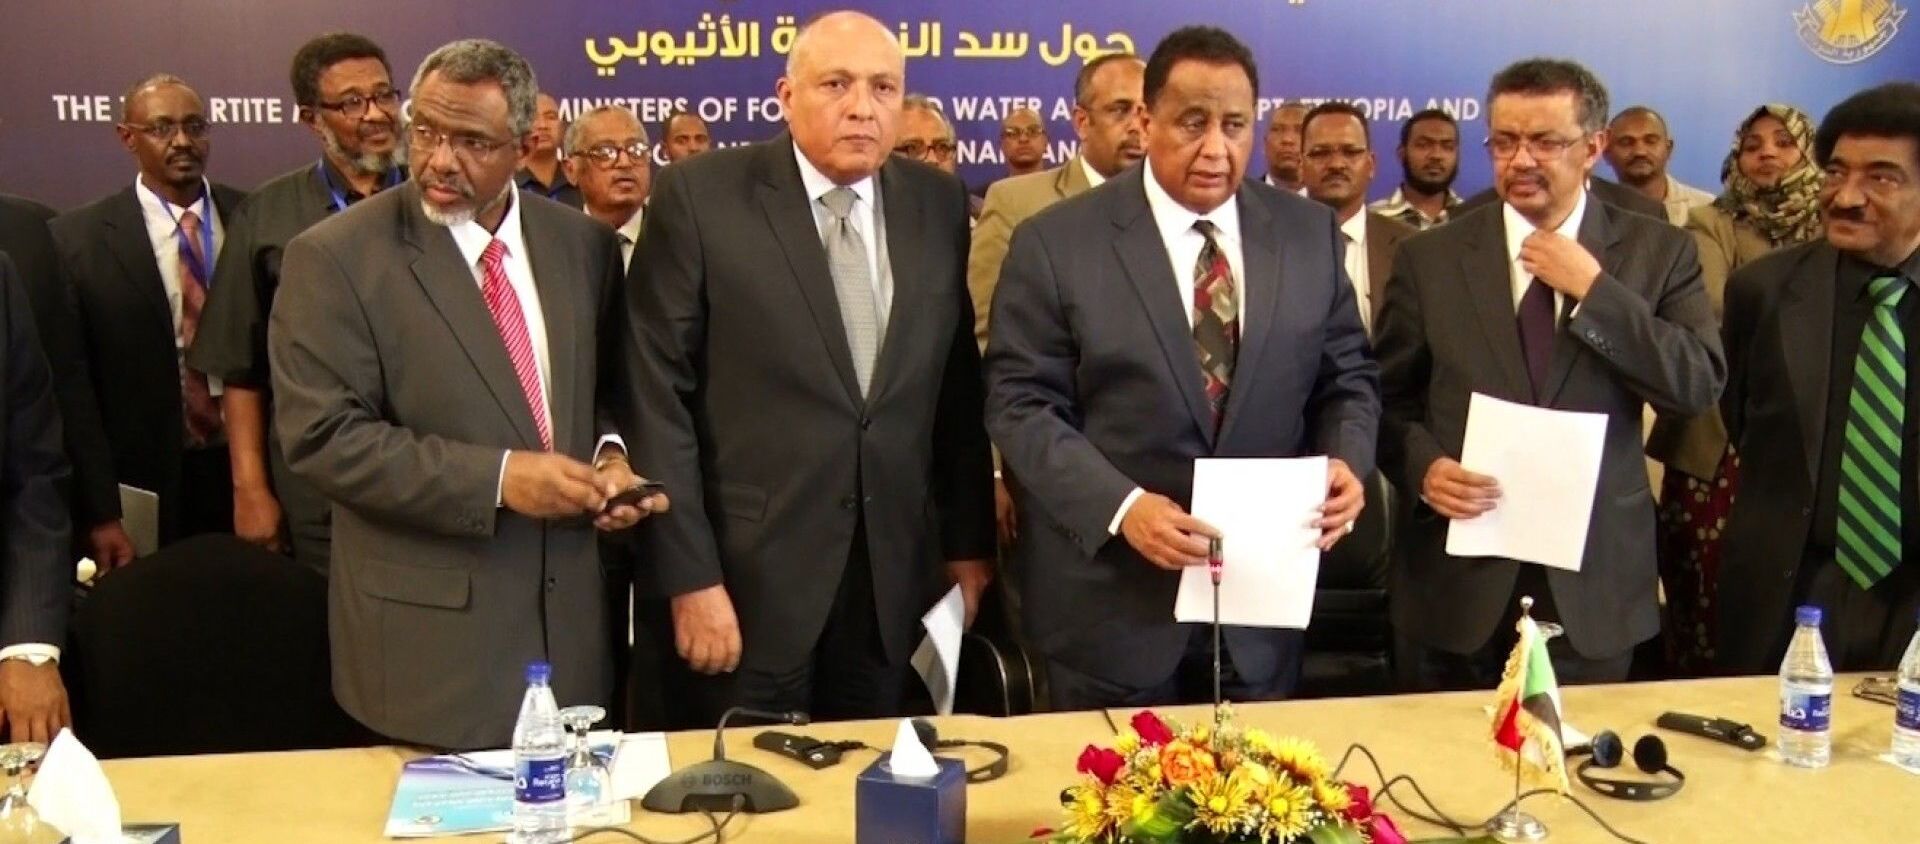 Etiyopya, Mısır ve Sudan arasında krize yol açan Hedasi Barajı'na ilişkin müzakerelerin 3-4 Nisan'da yeniden başlayacağı bildirildi. - Sputnik Türkiye, 1920, 02.04.2021